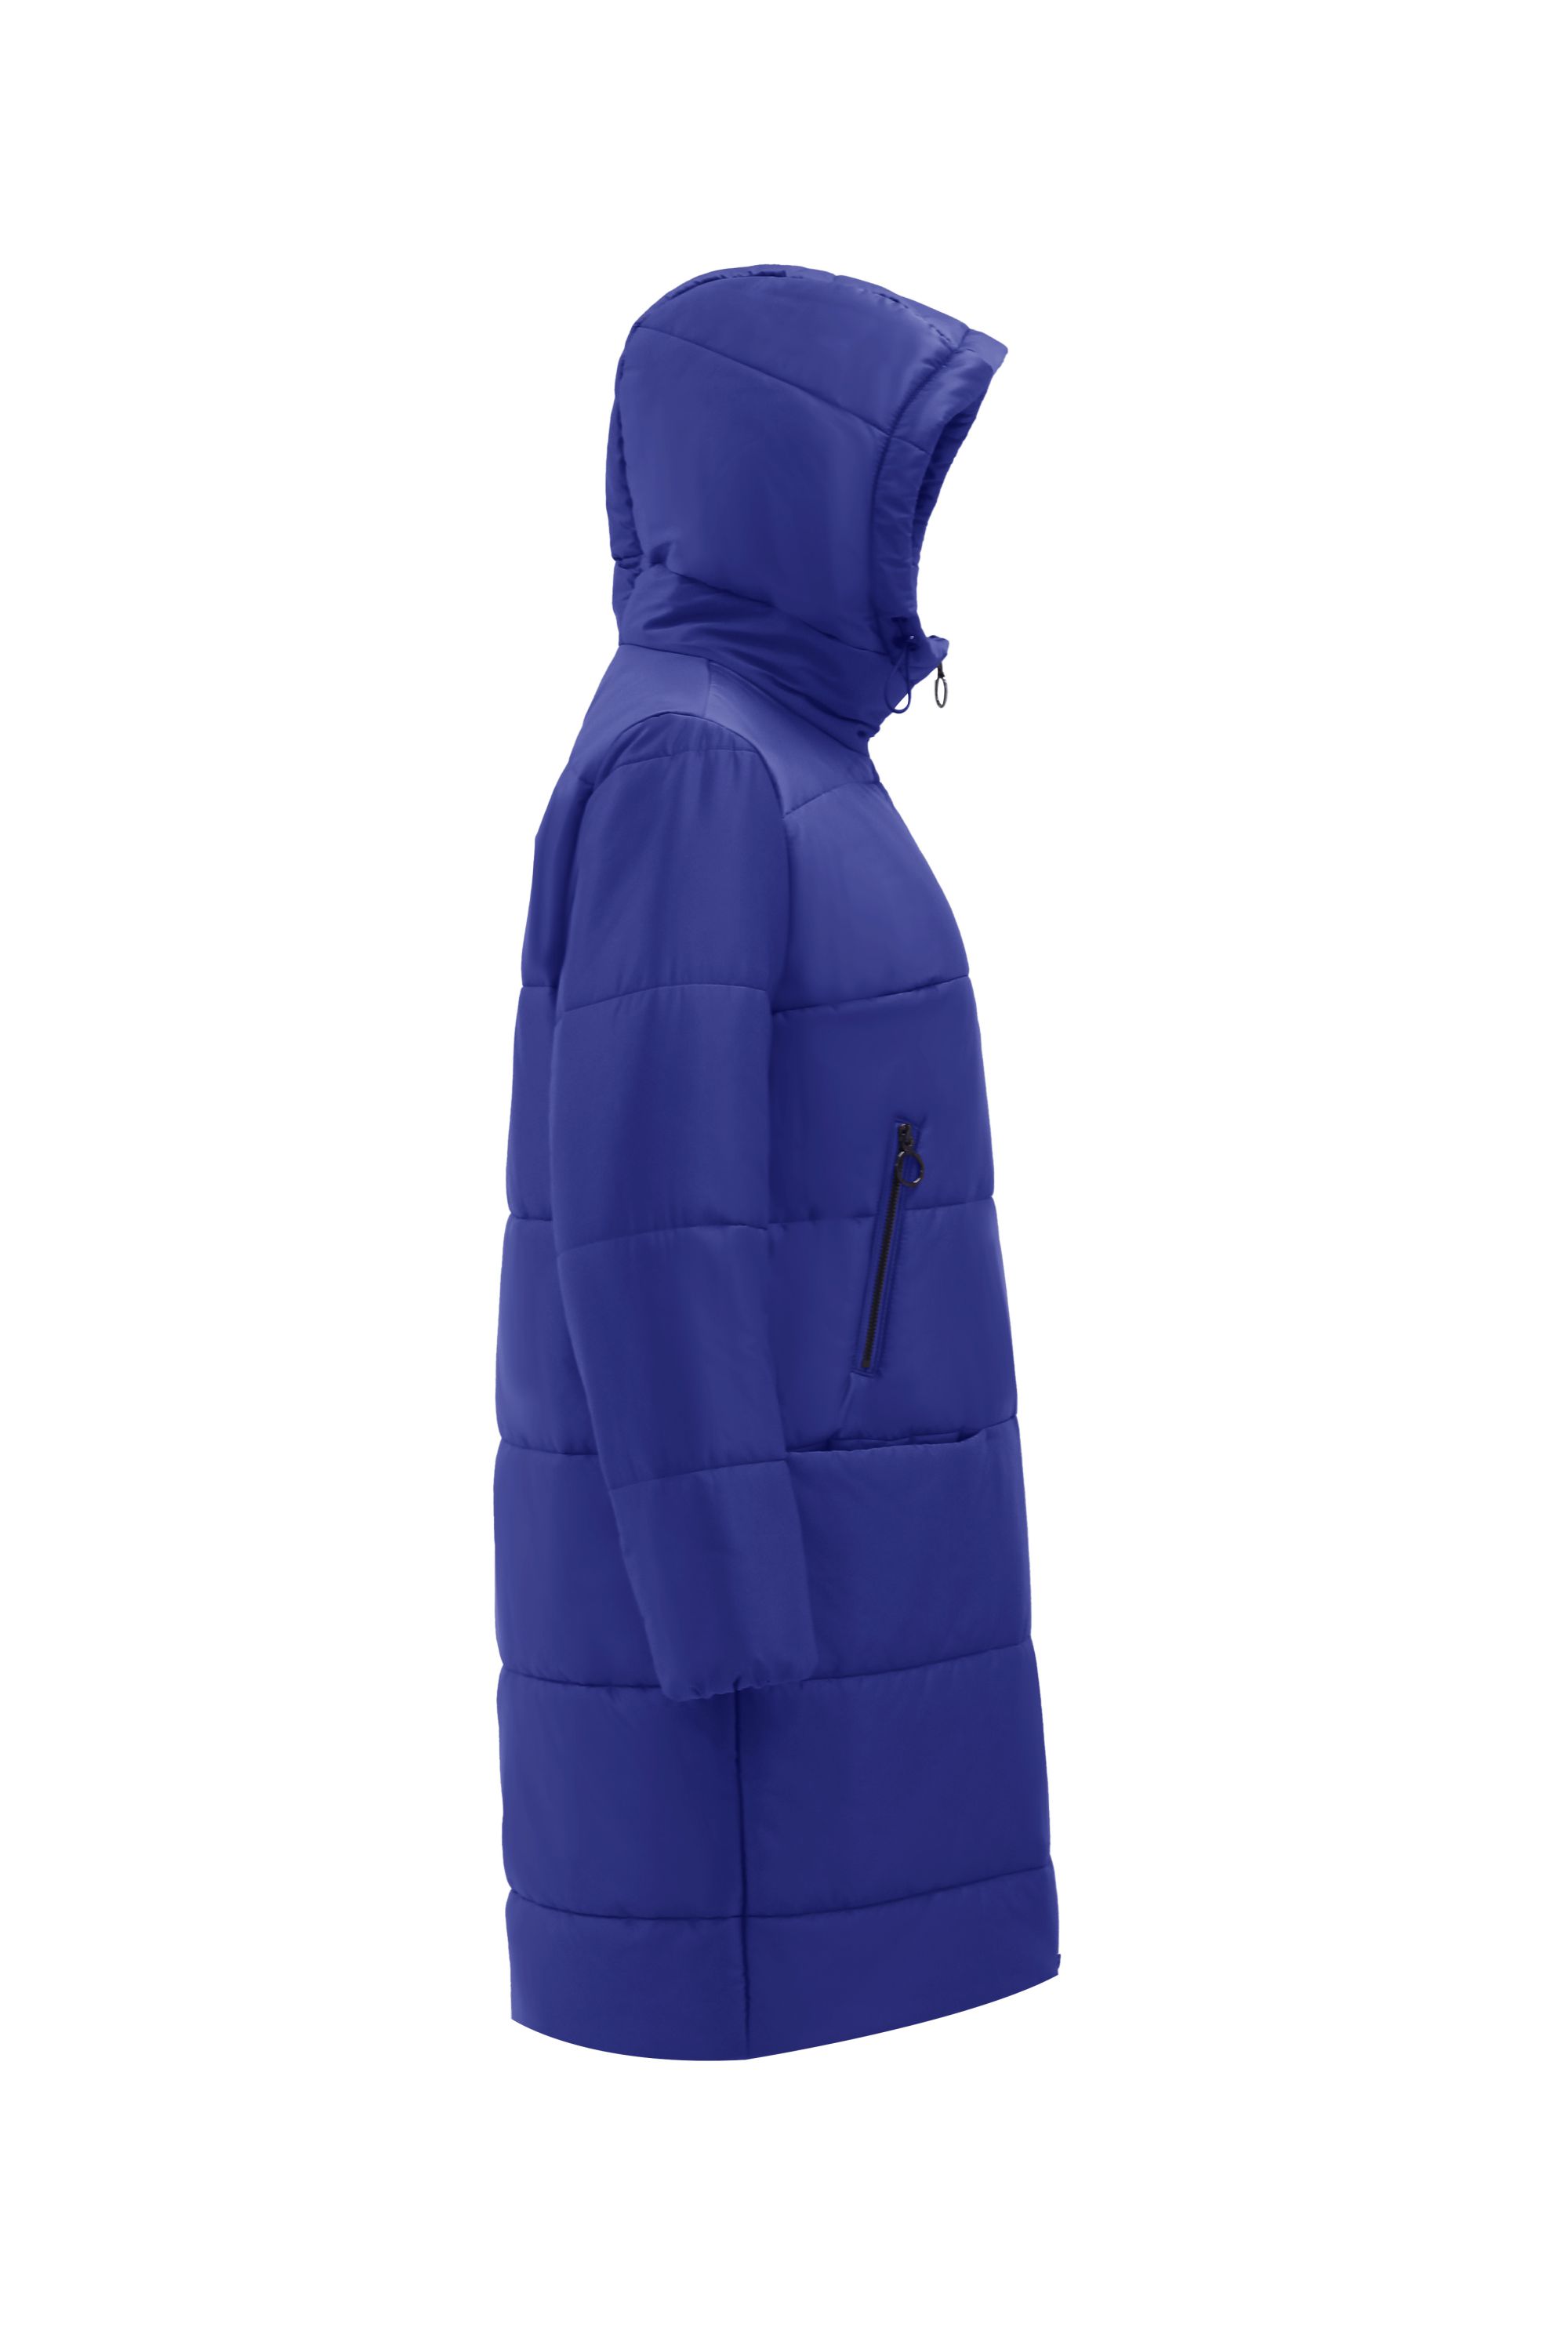 Пальто женское плащевое утепленное 5-12382-1